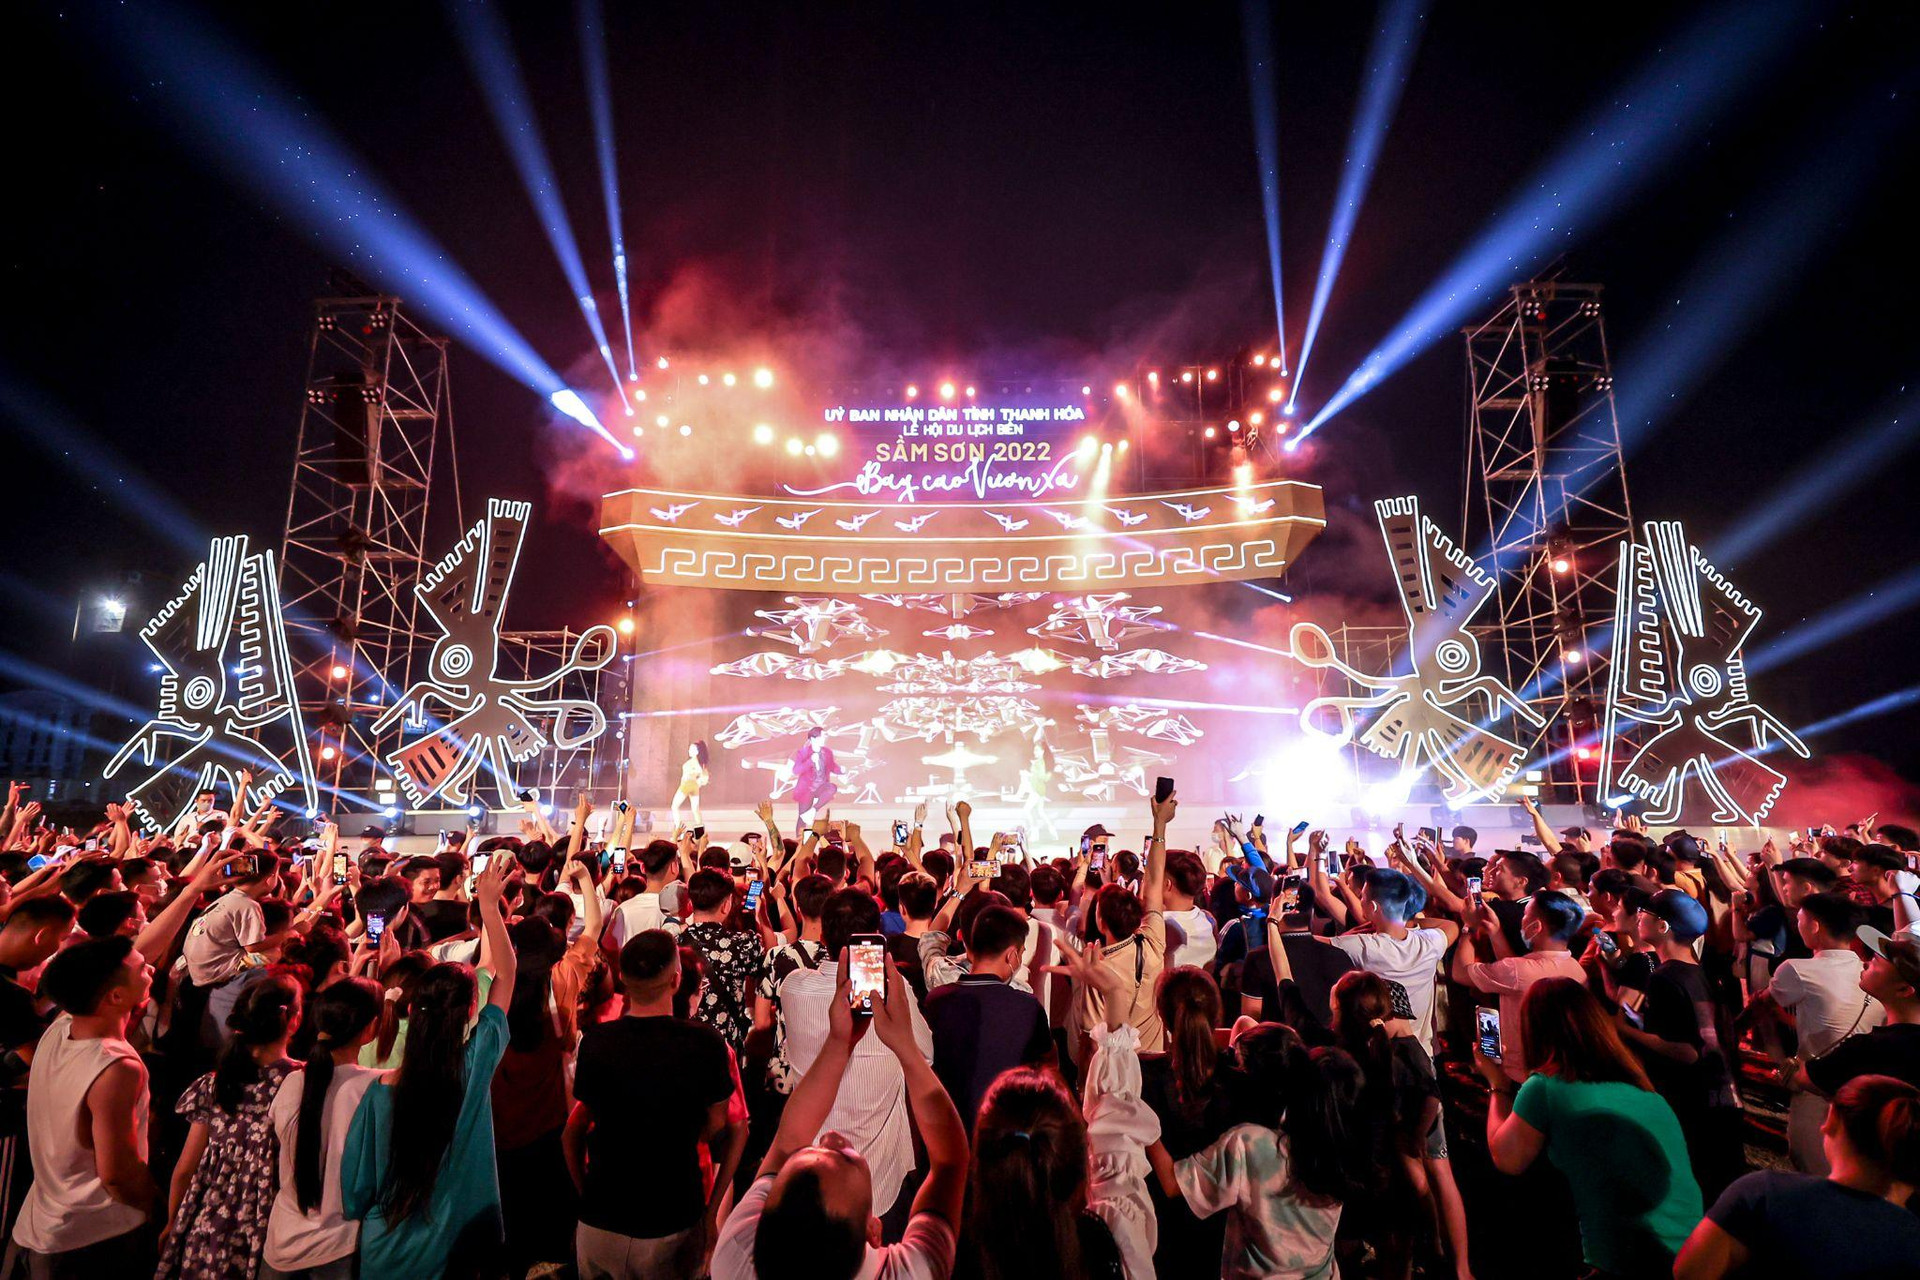 Sân khấu ngoài trời tại Quảng trường biển Sầm Sơn xóa bỏ khoảng cách giữa nghệ sỹ và khán giả.